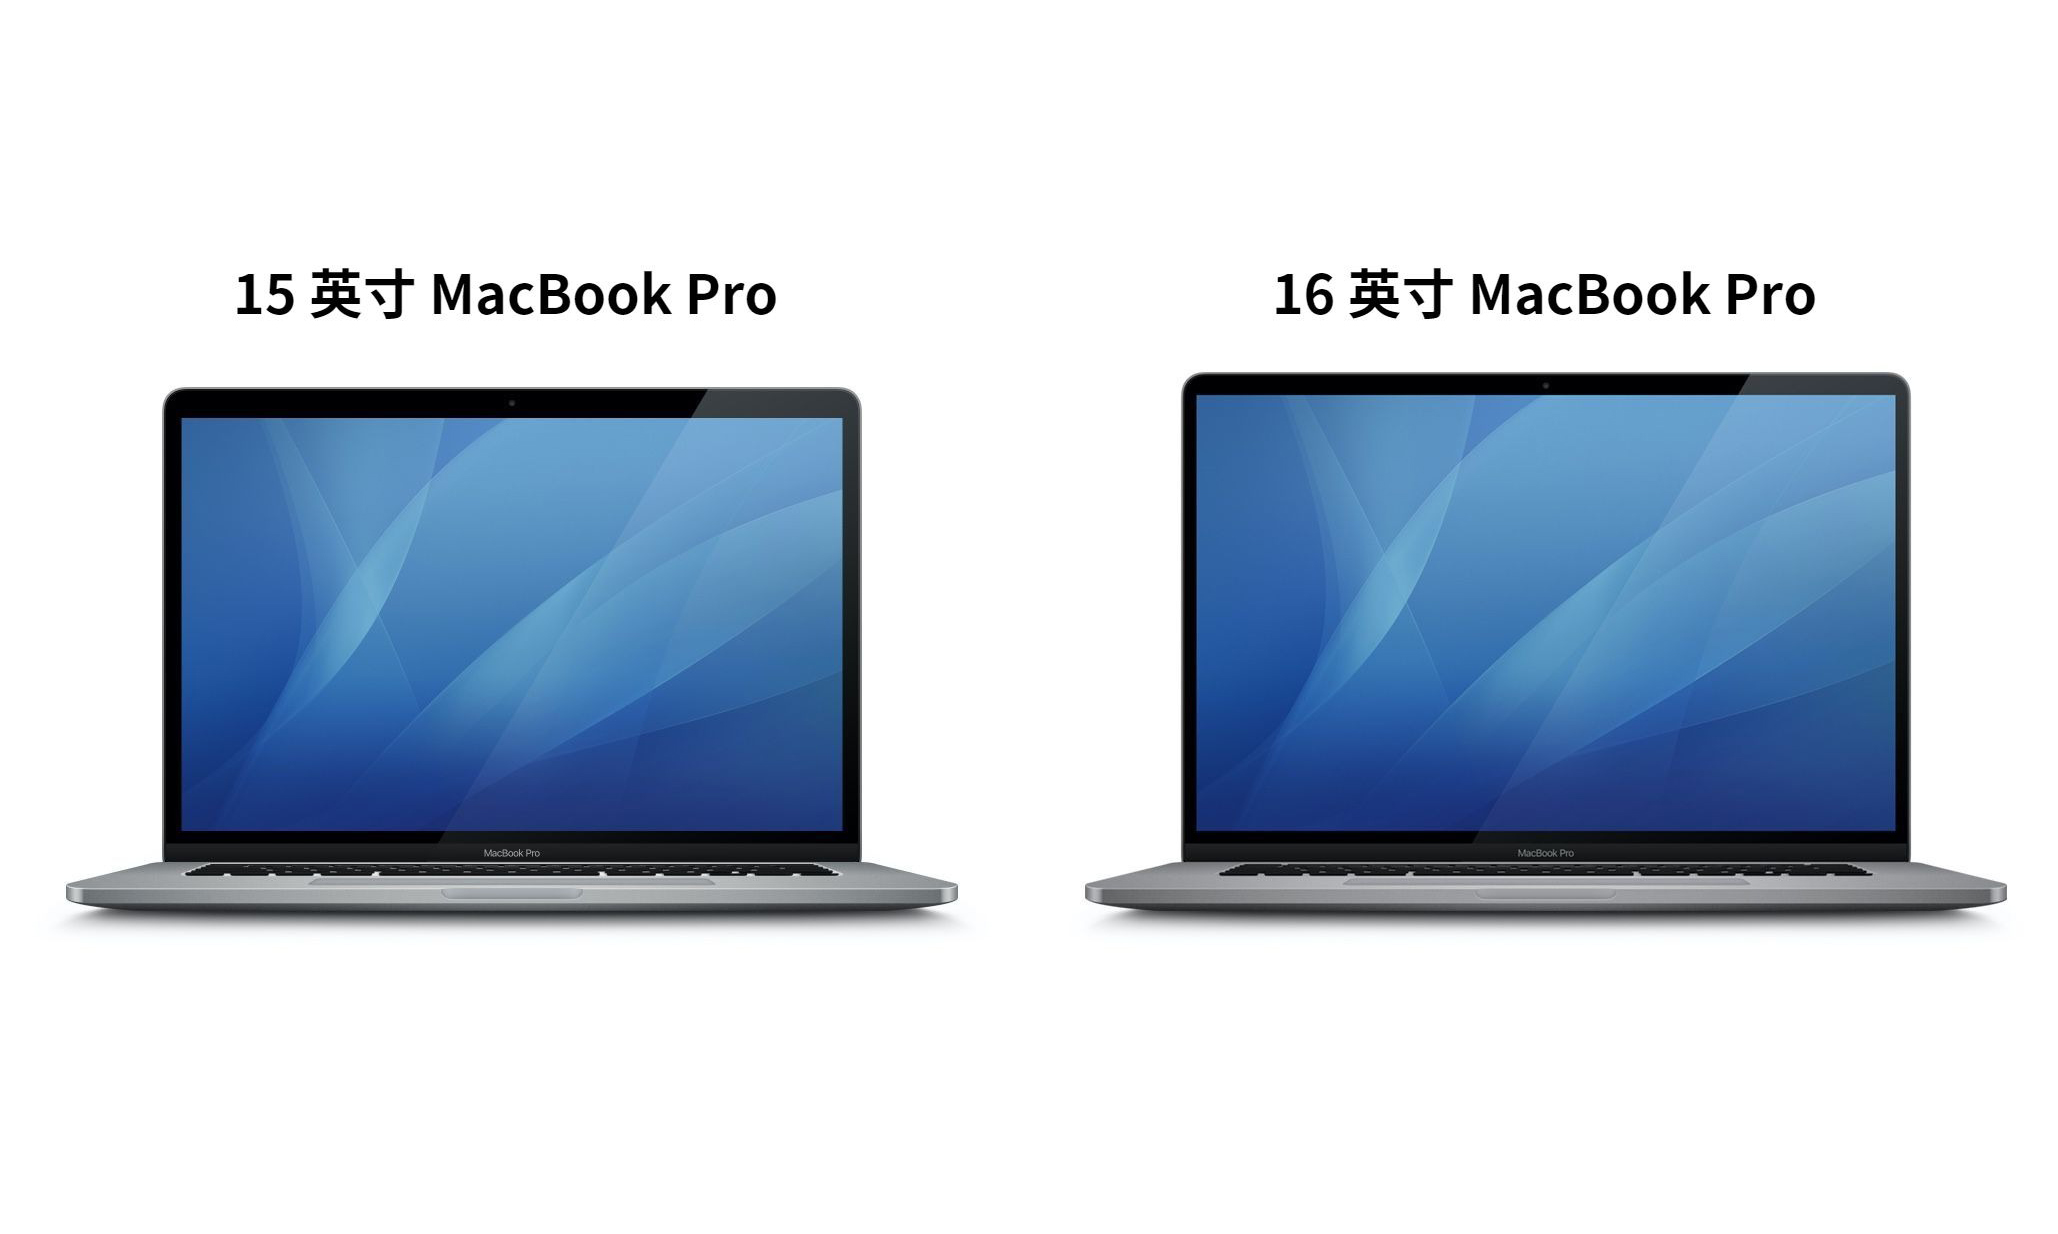 取代 15 英寸，16 英寸 MacBook Pro 价格或与其保持一致